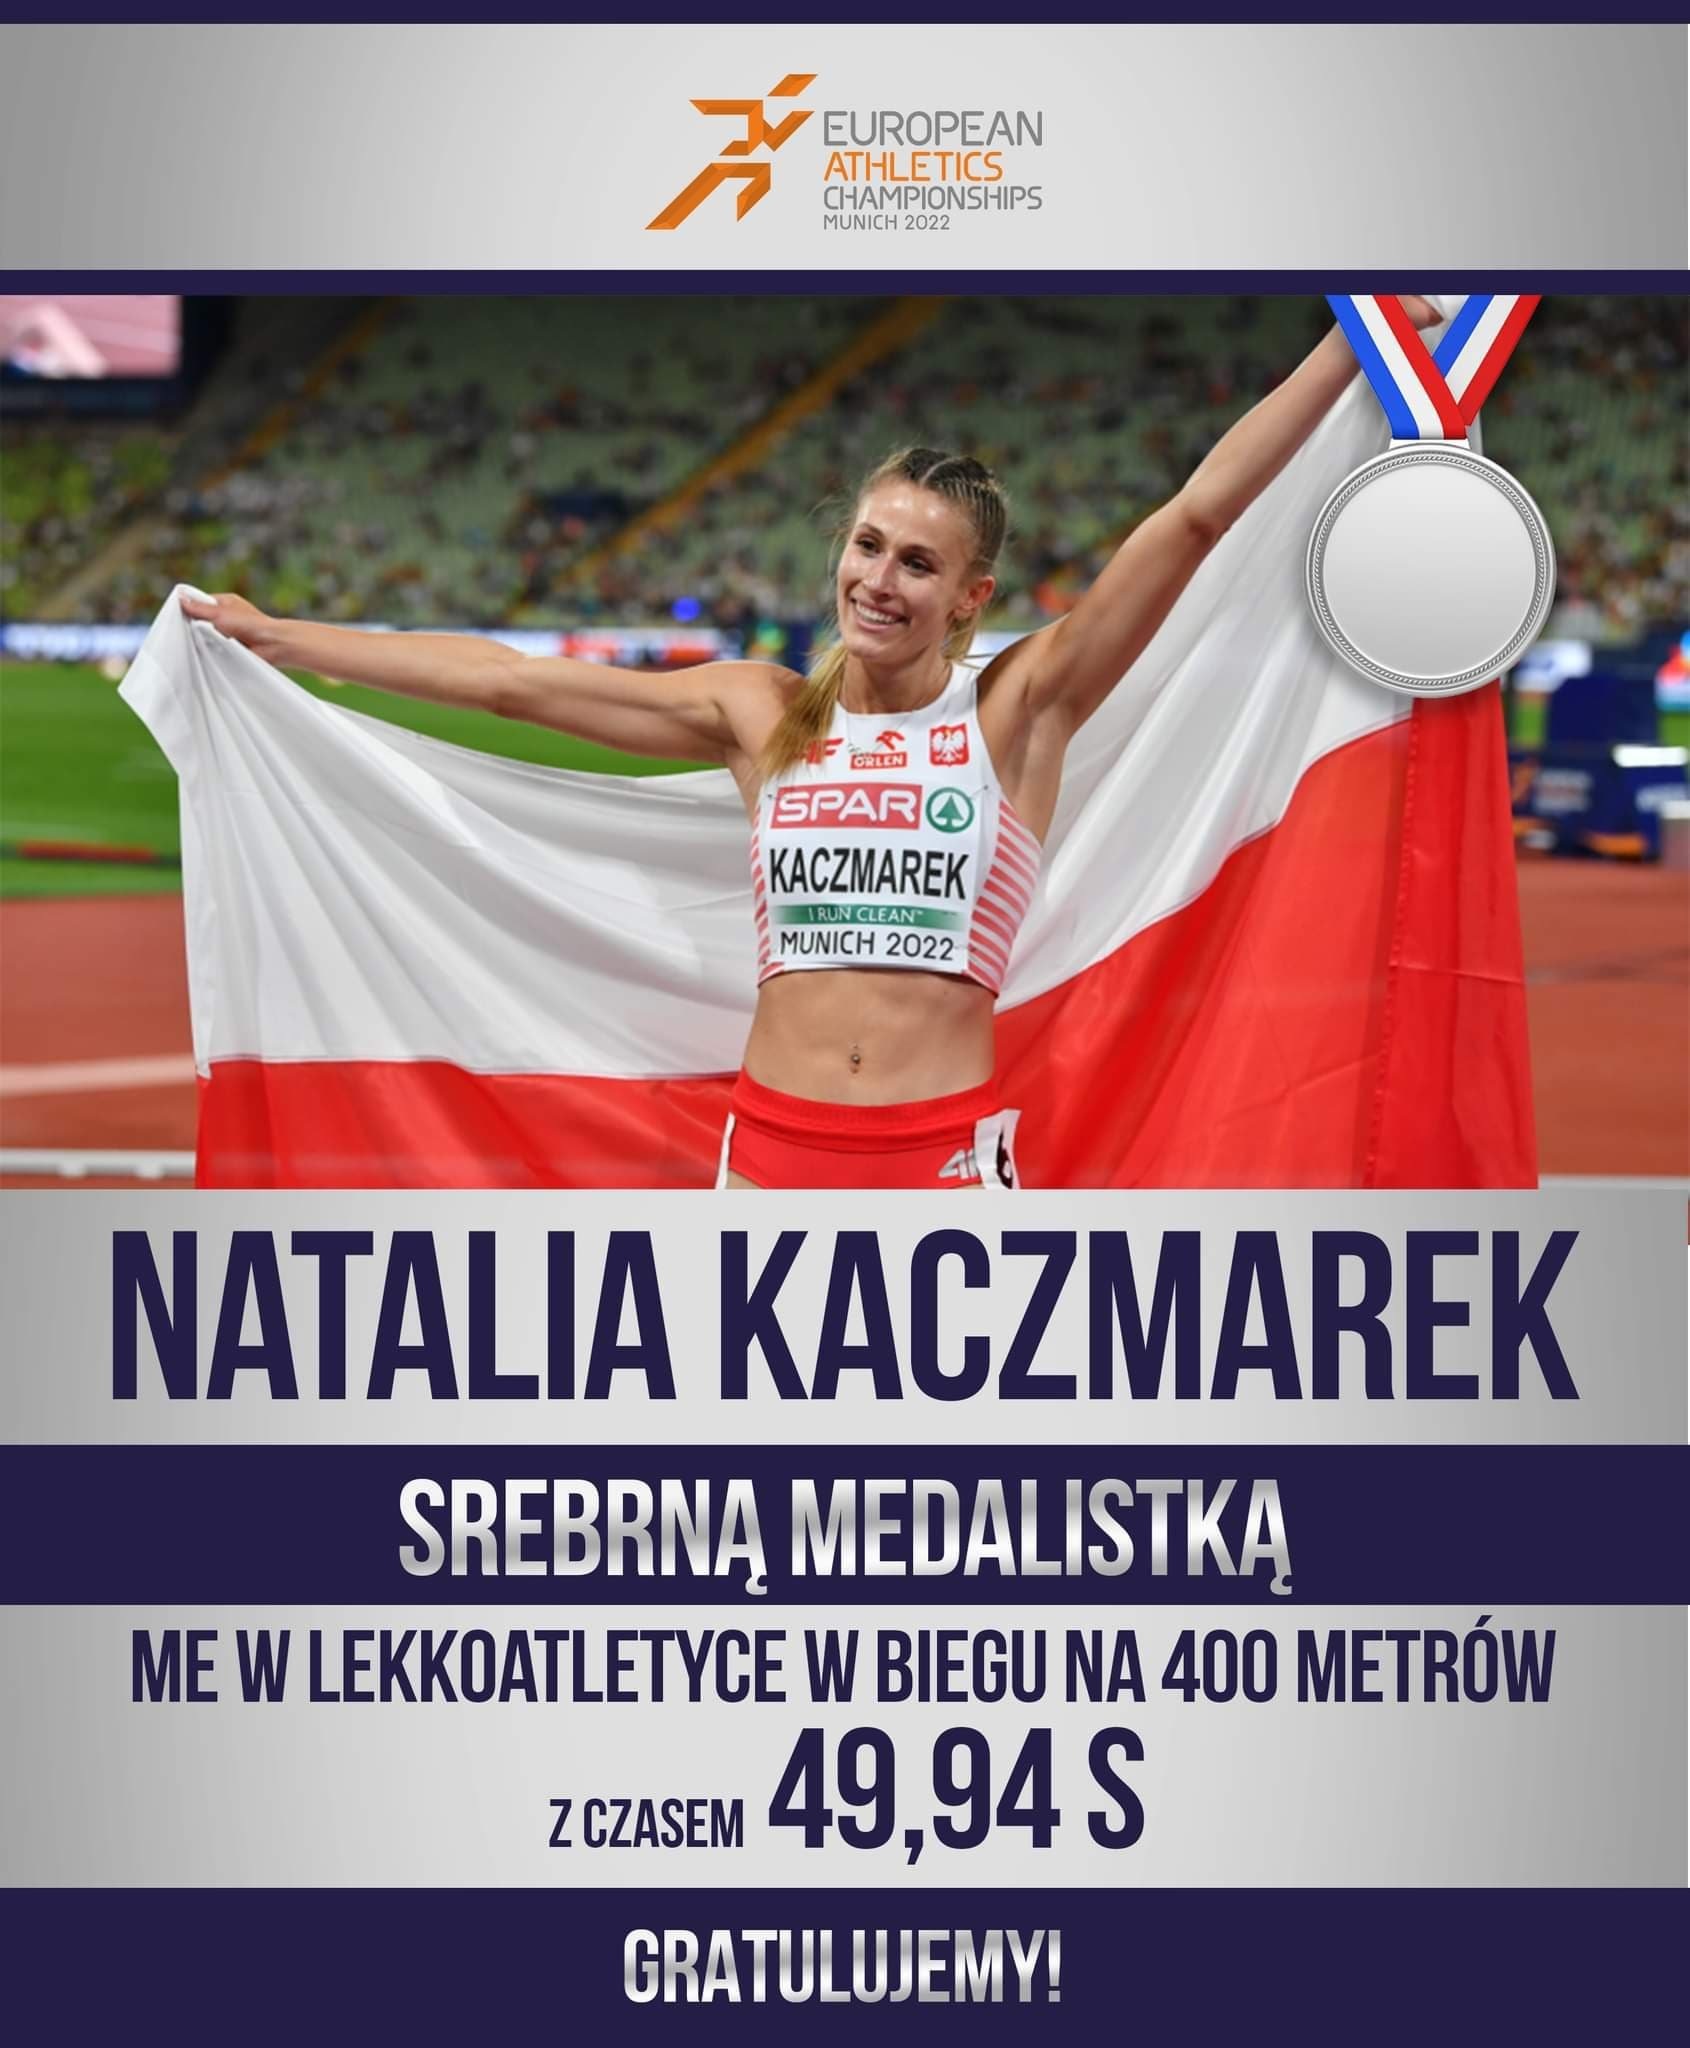 Natalia Kaczmarek na podium w mistrzostwach Europy! 